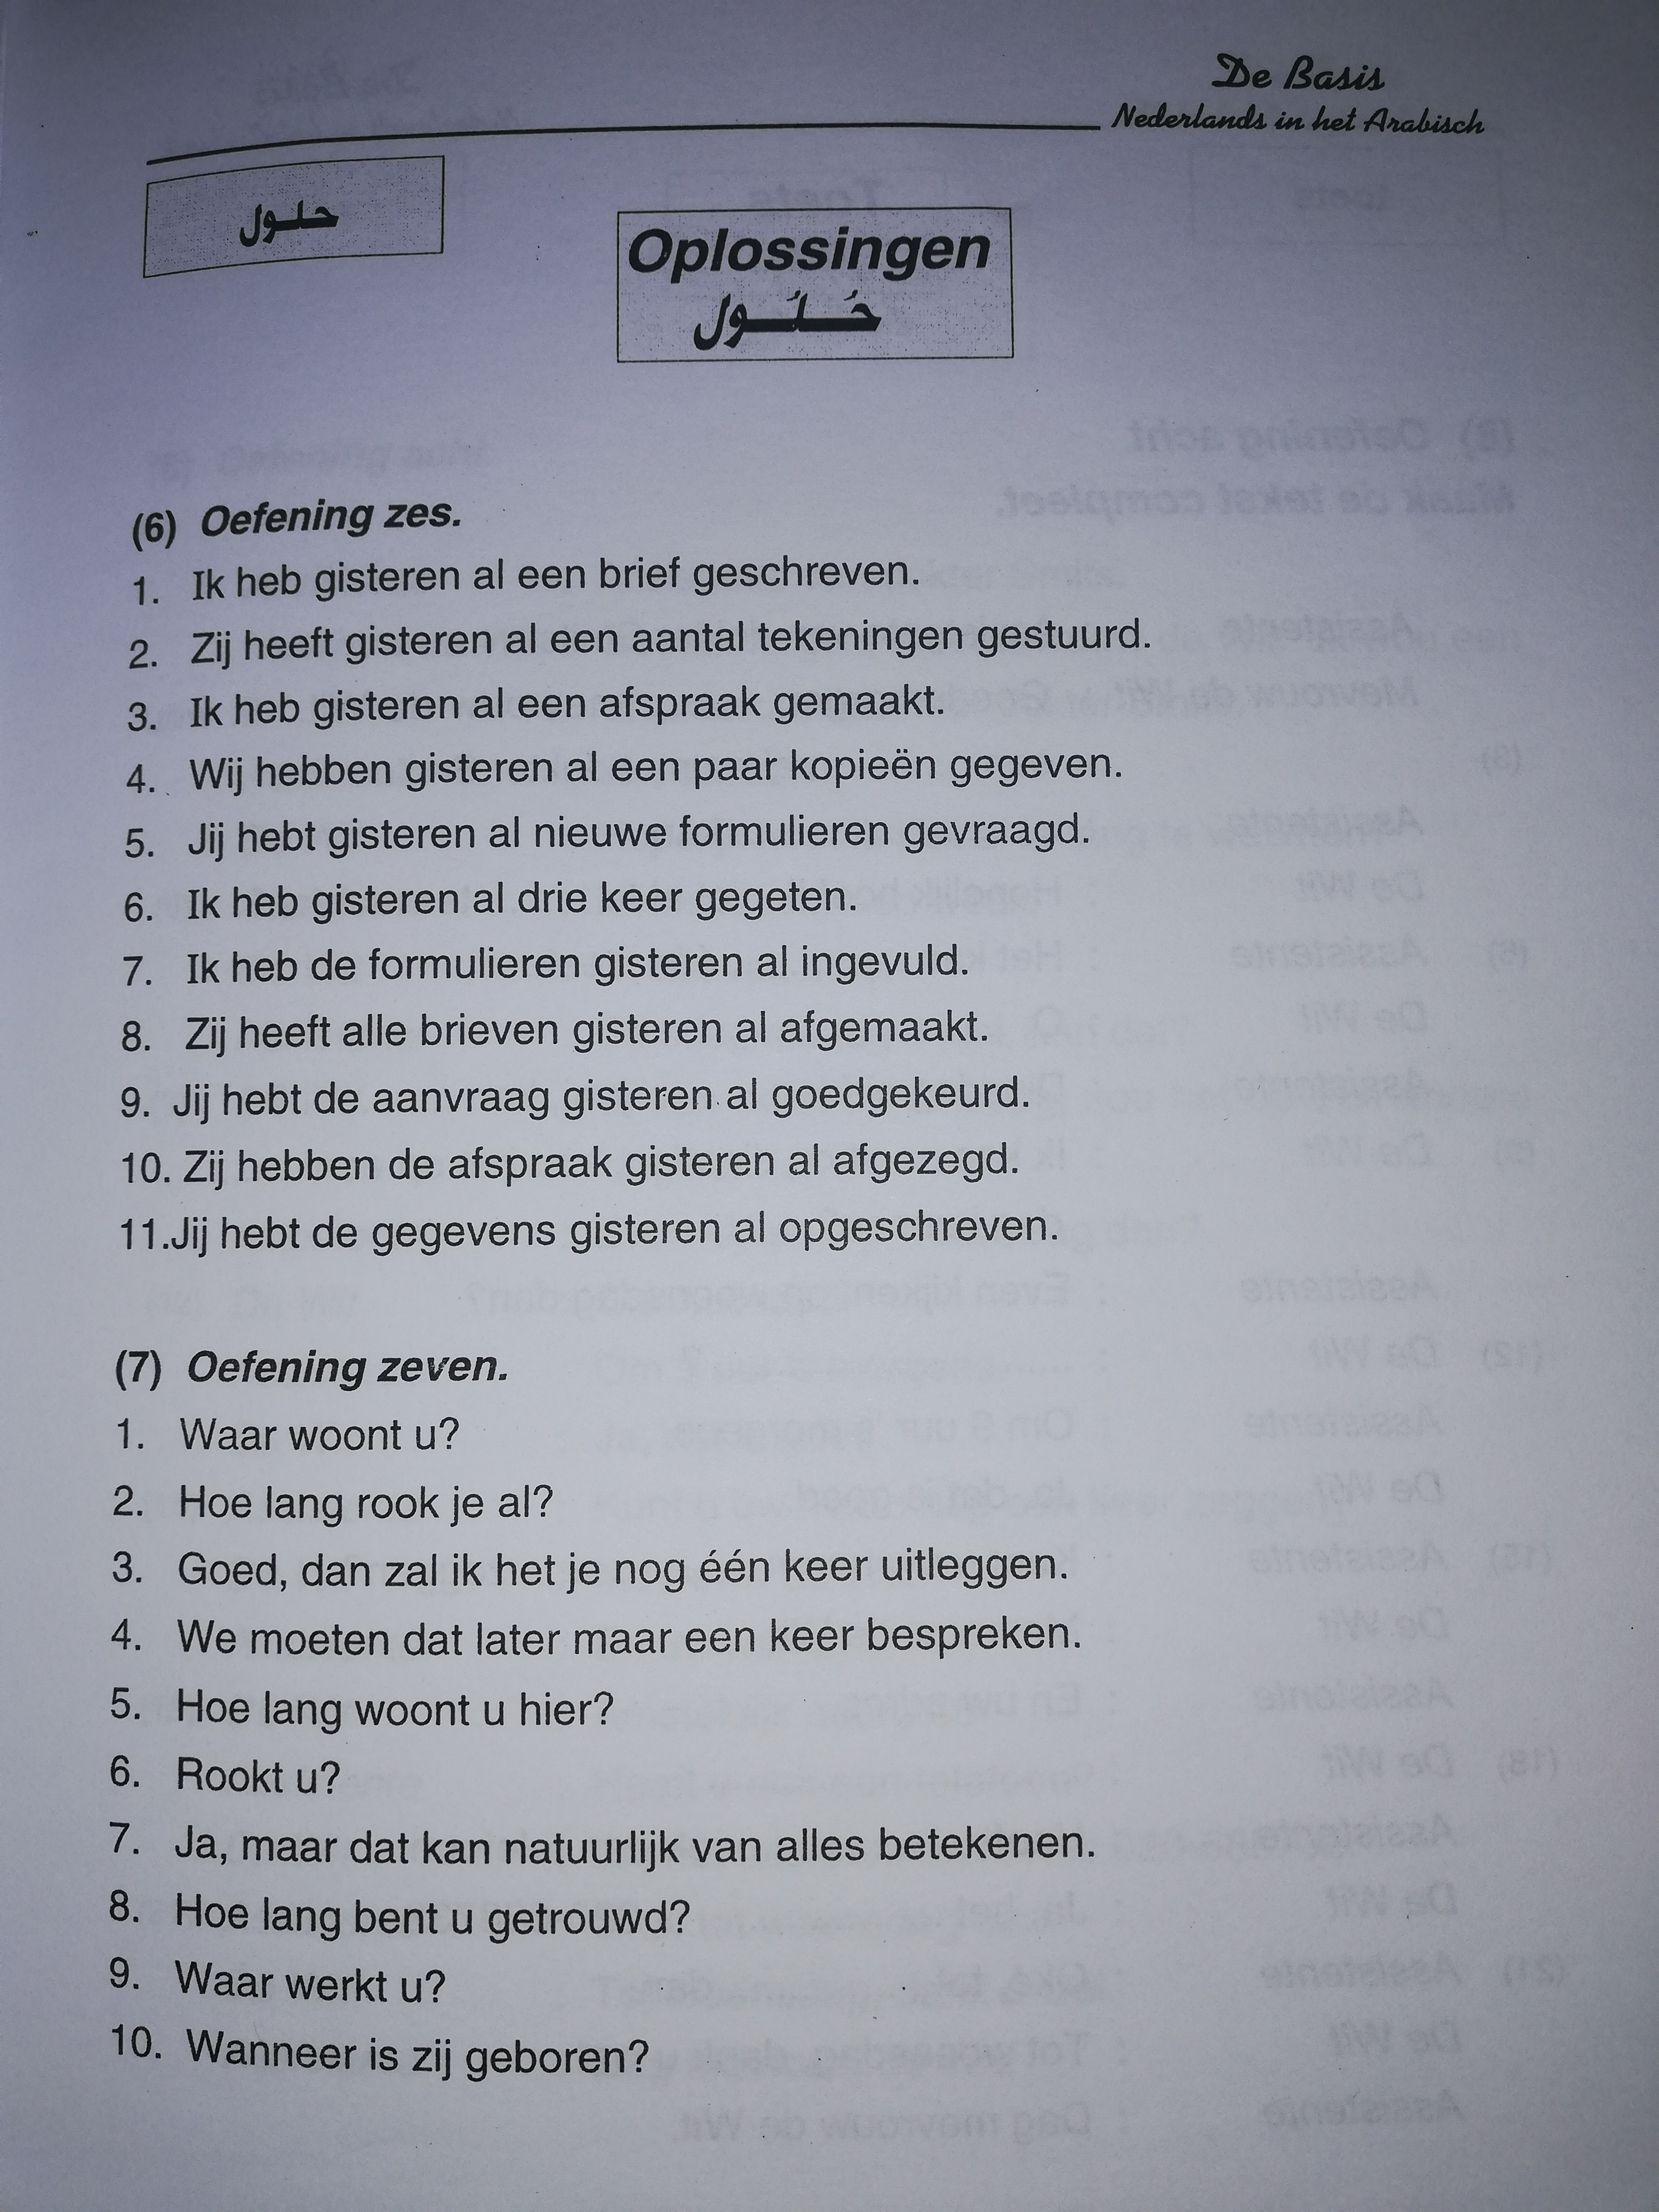 نماذج امتحان علي الجمل في اللغة هولندية